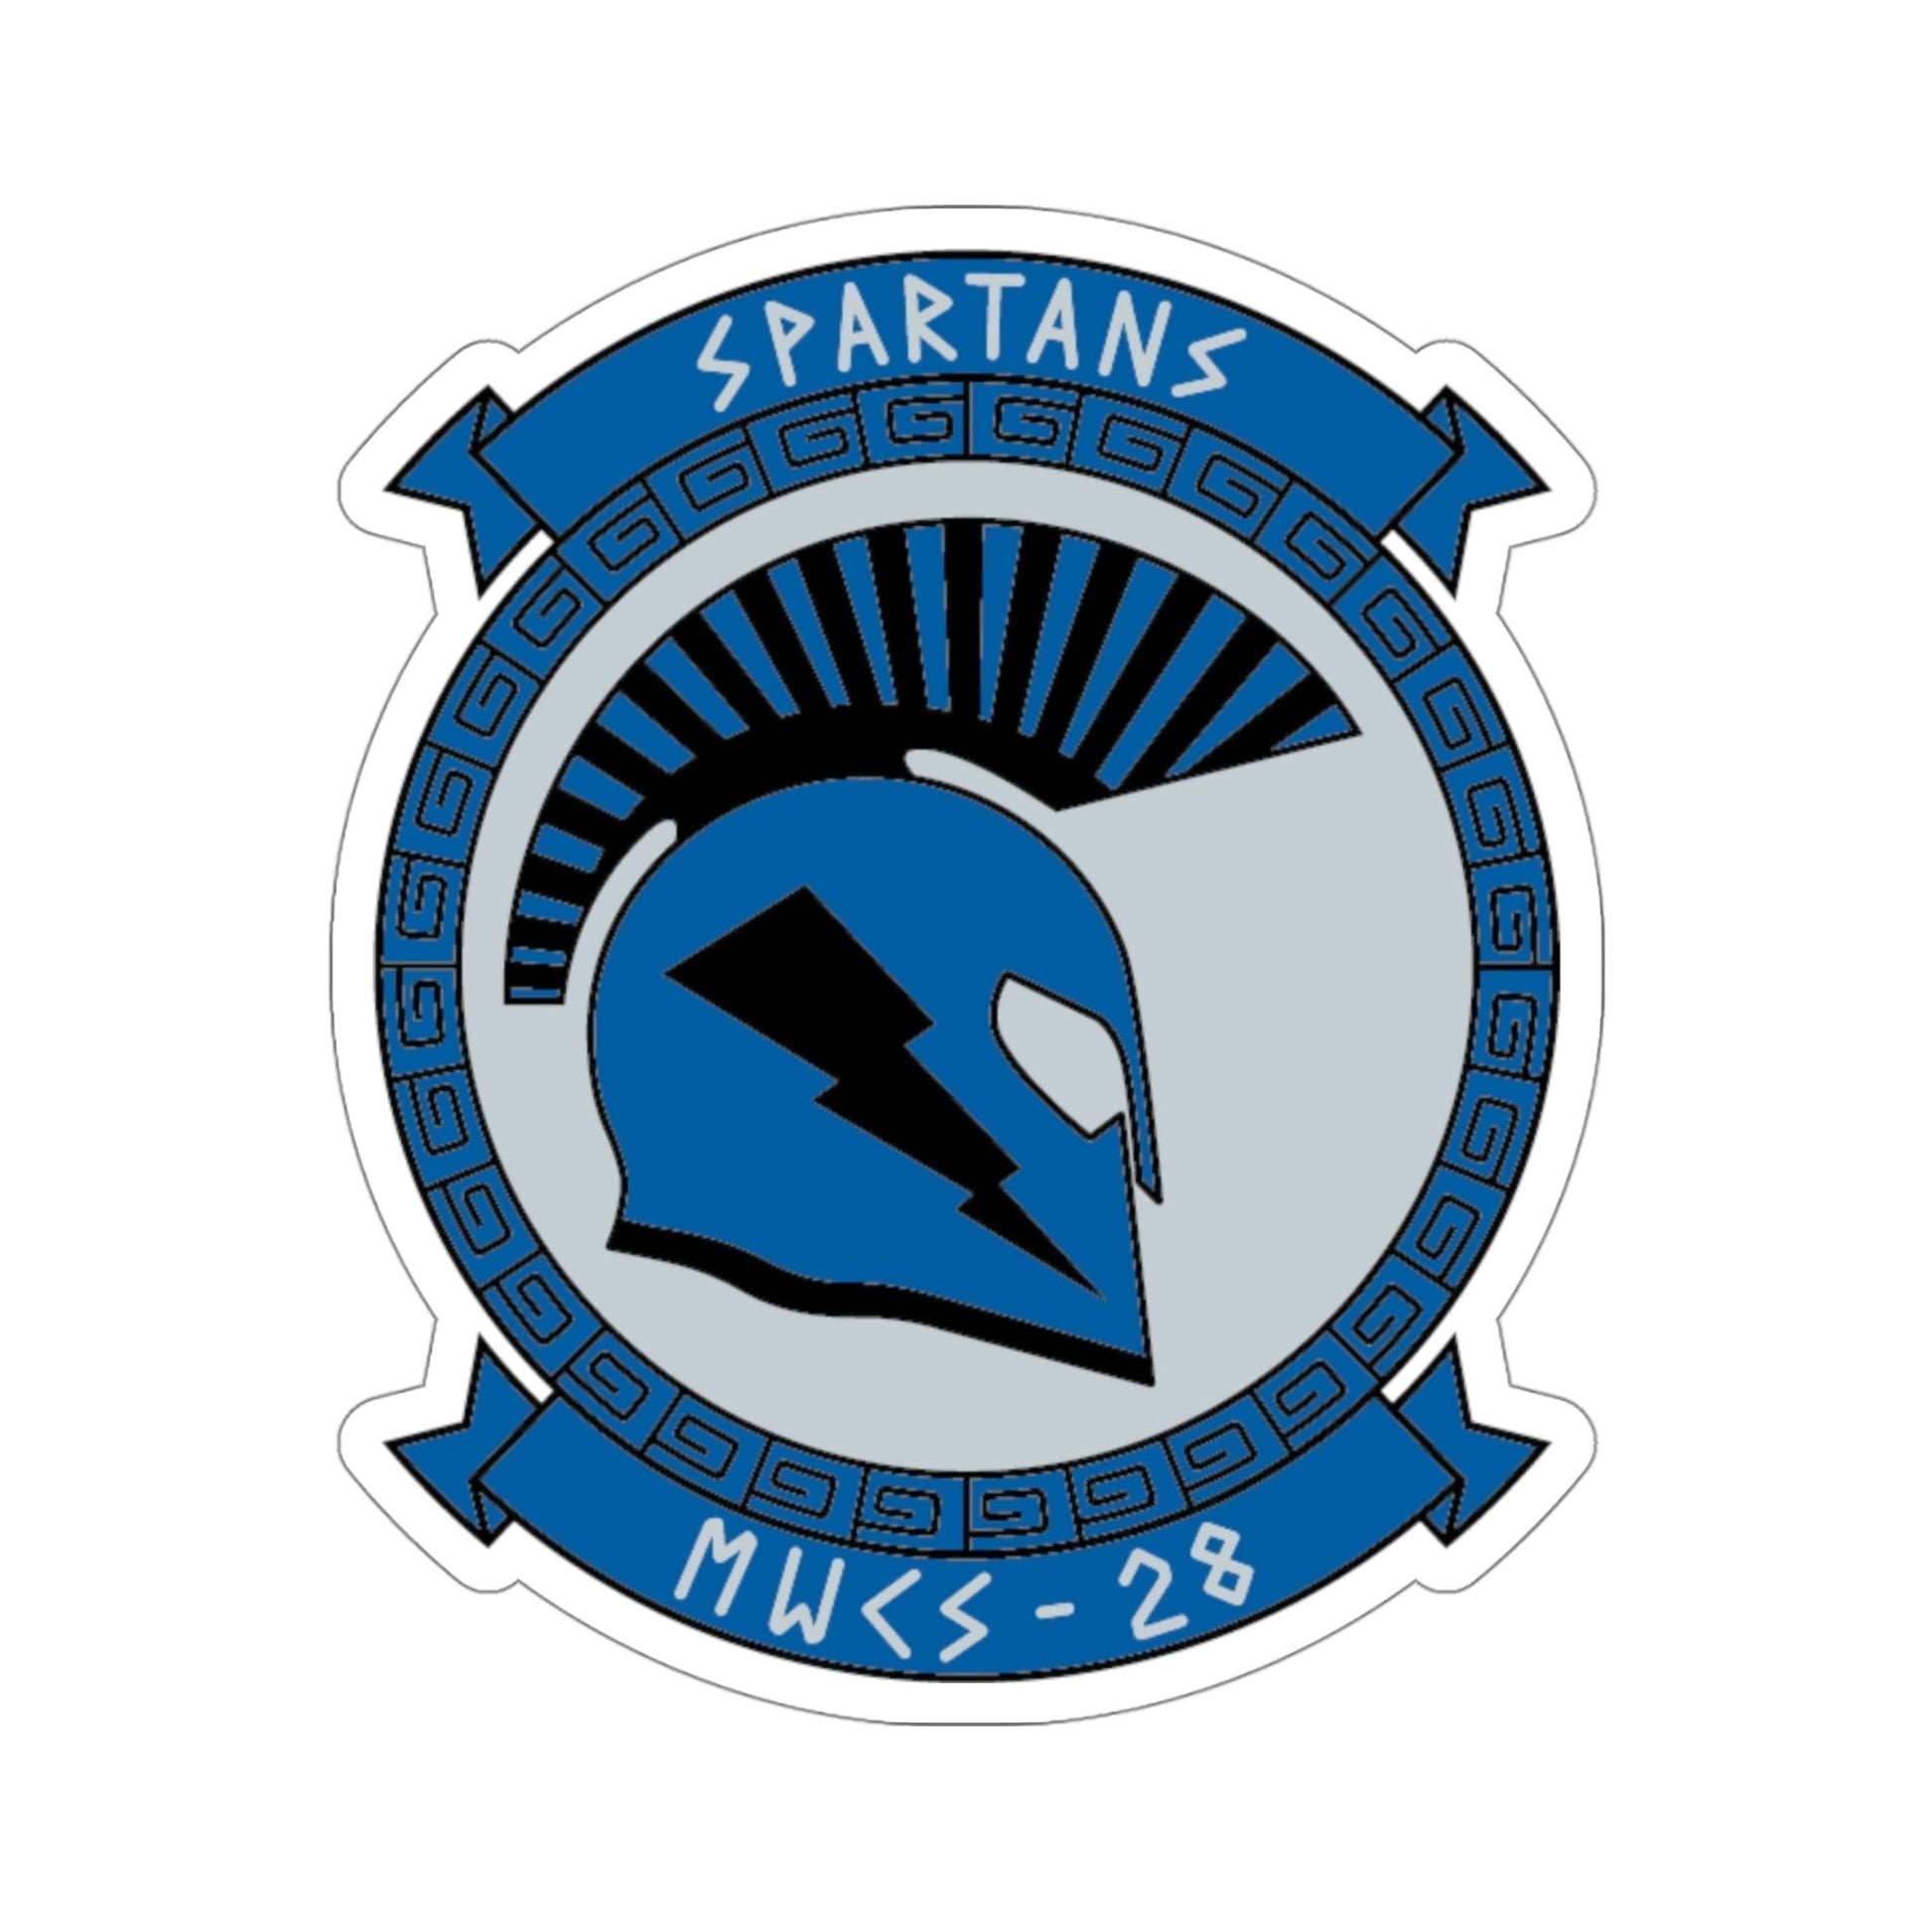 MWCS 28 Spartans (USMC) STICKER Vinyl Die-Cut Decal-4 Inch-The Sticker Space